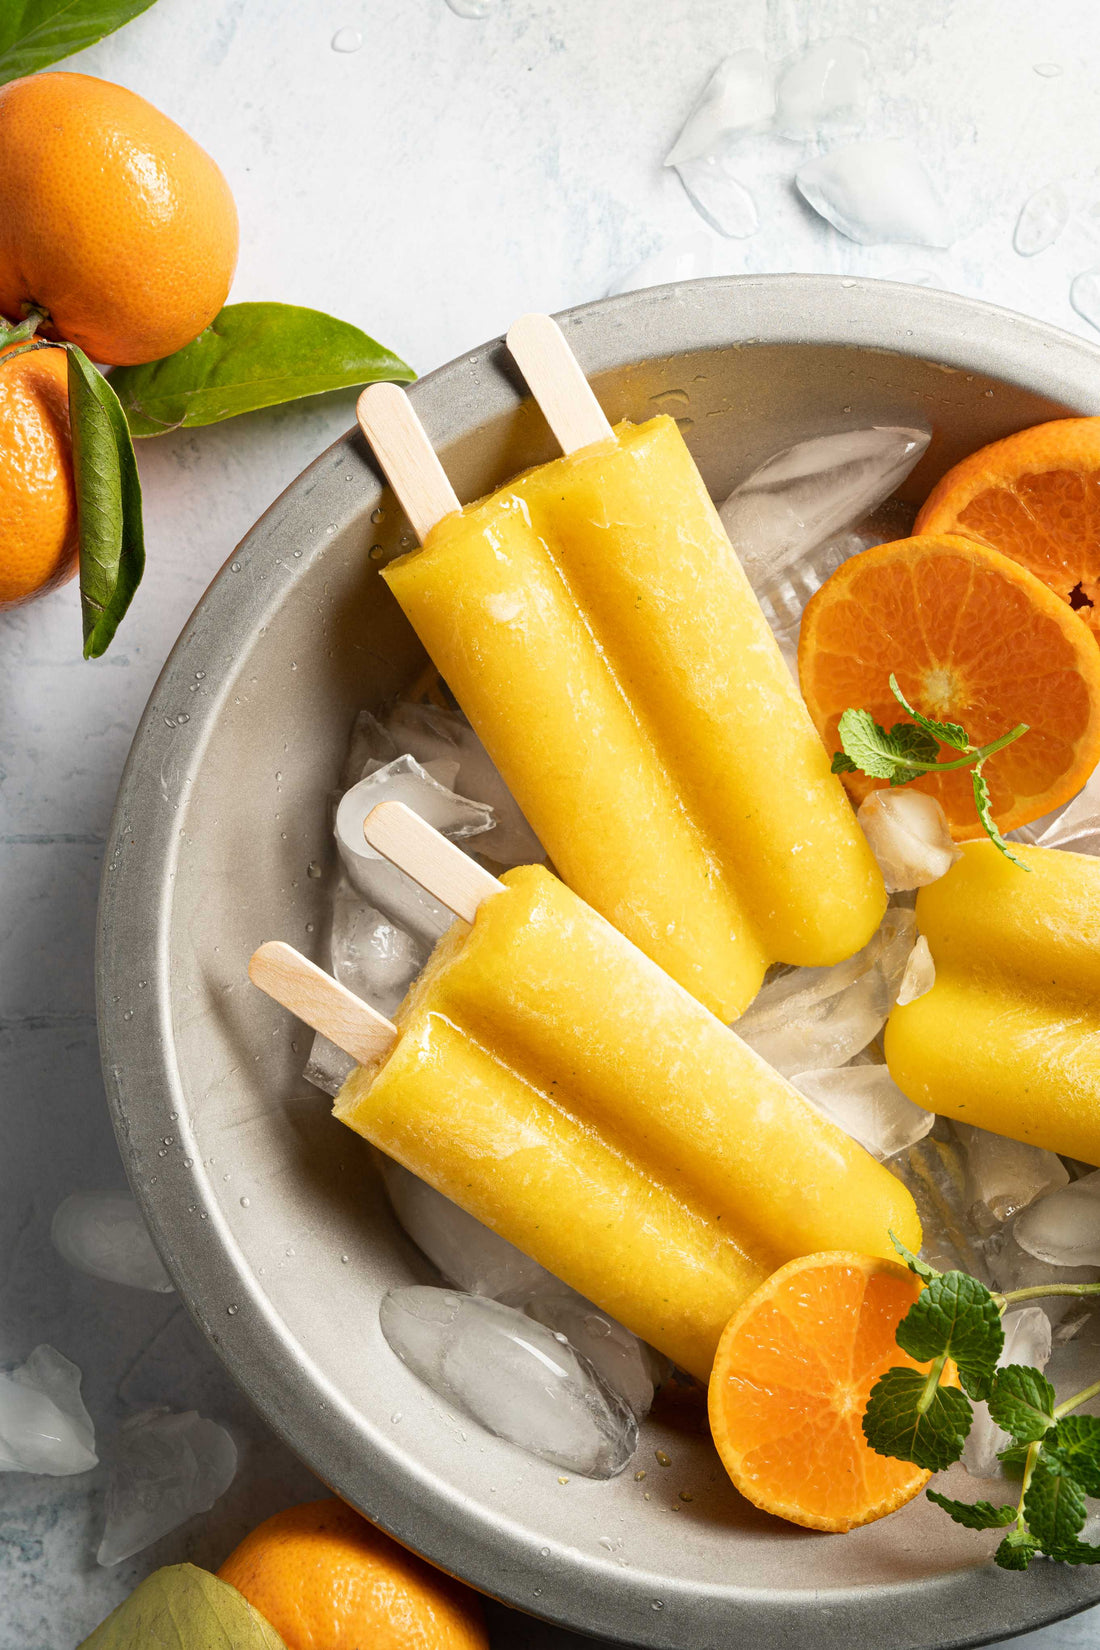 Pineapple Orange Popsicles - No Refined Sugar! - TSRI